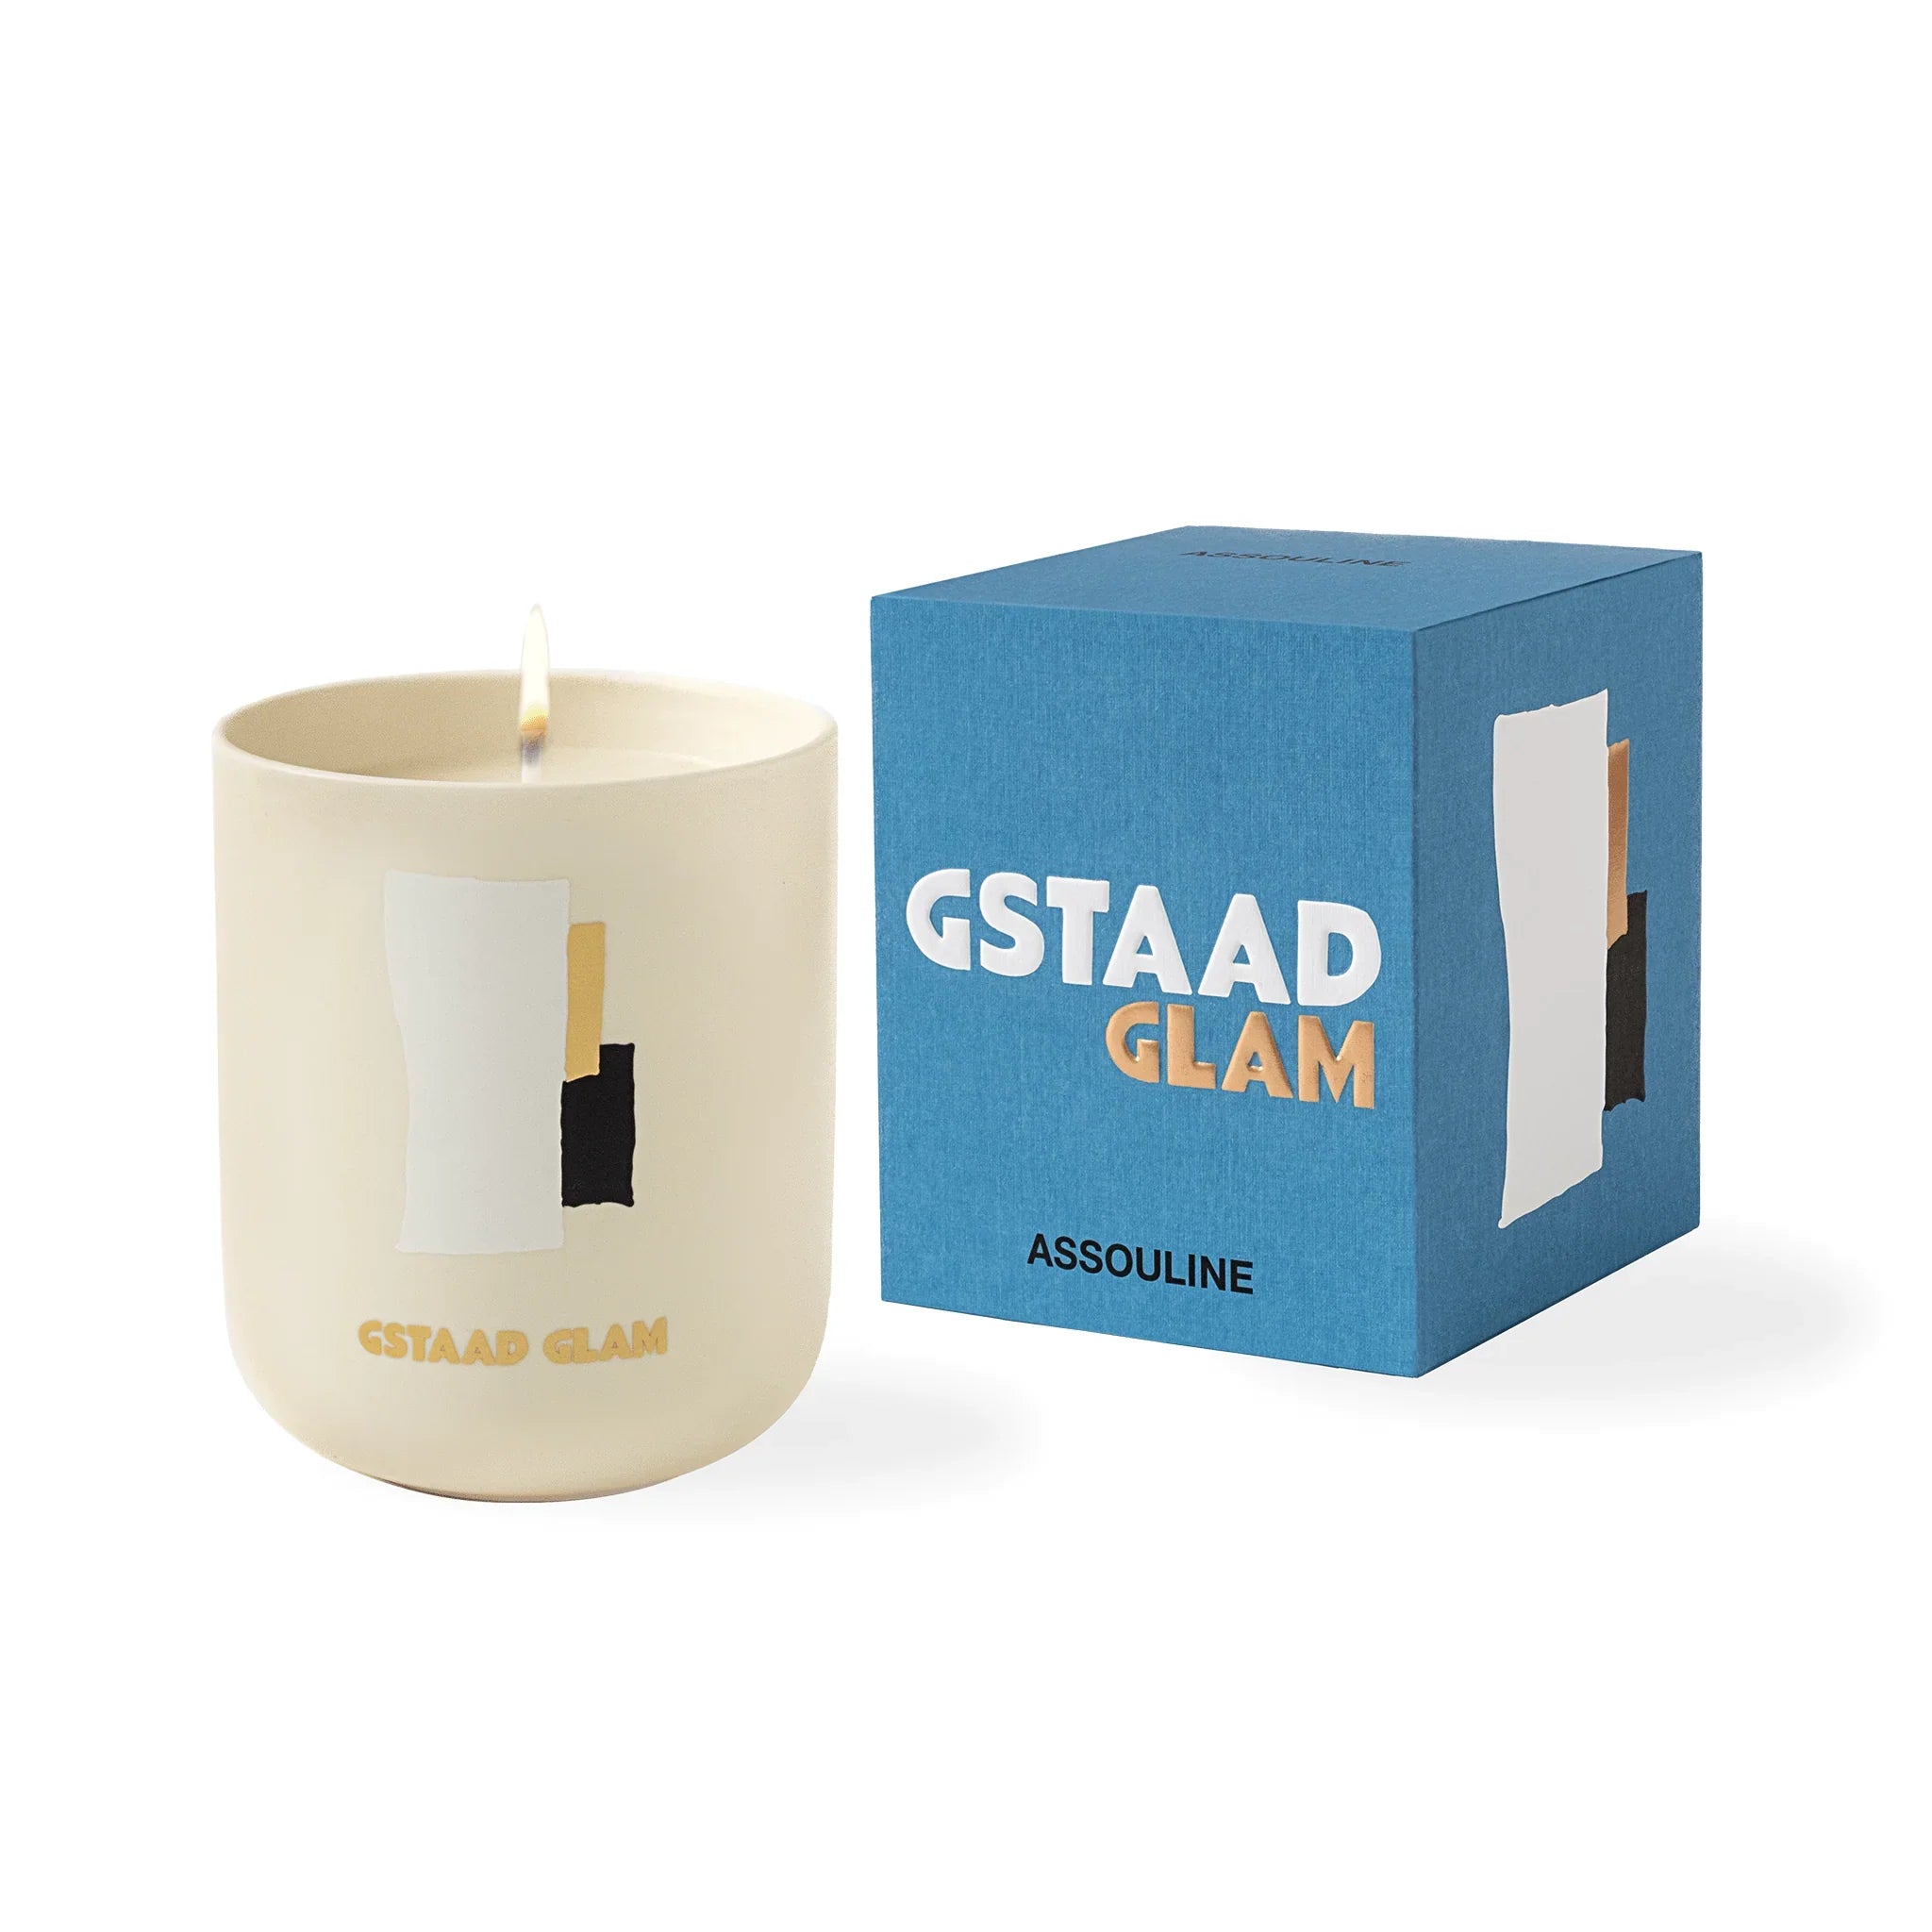 Assouline Gstaad Glam - Resor från hemljuset